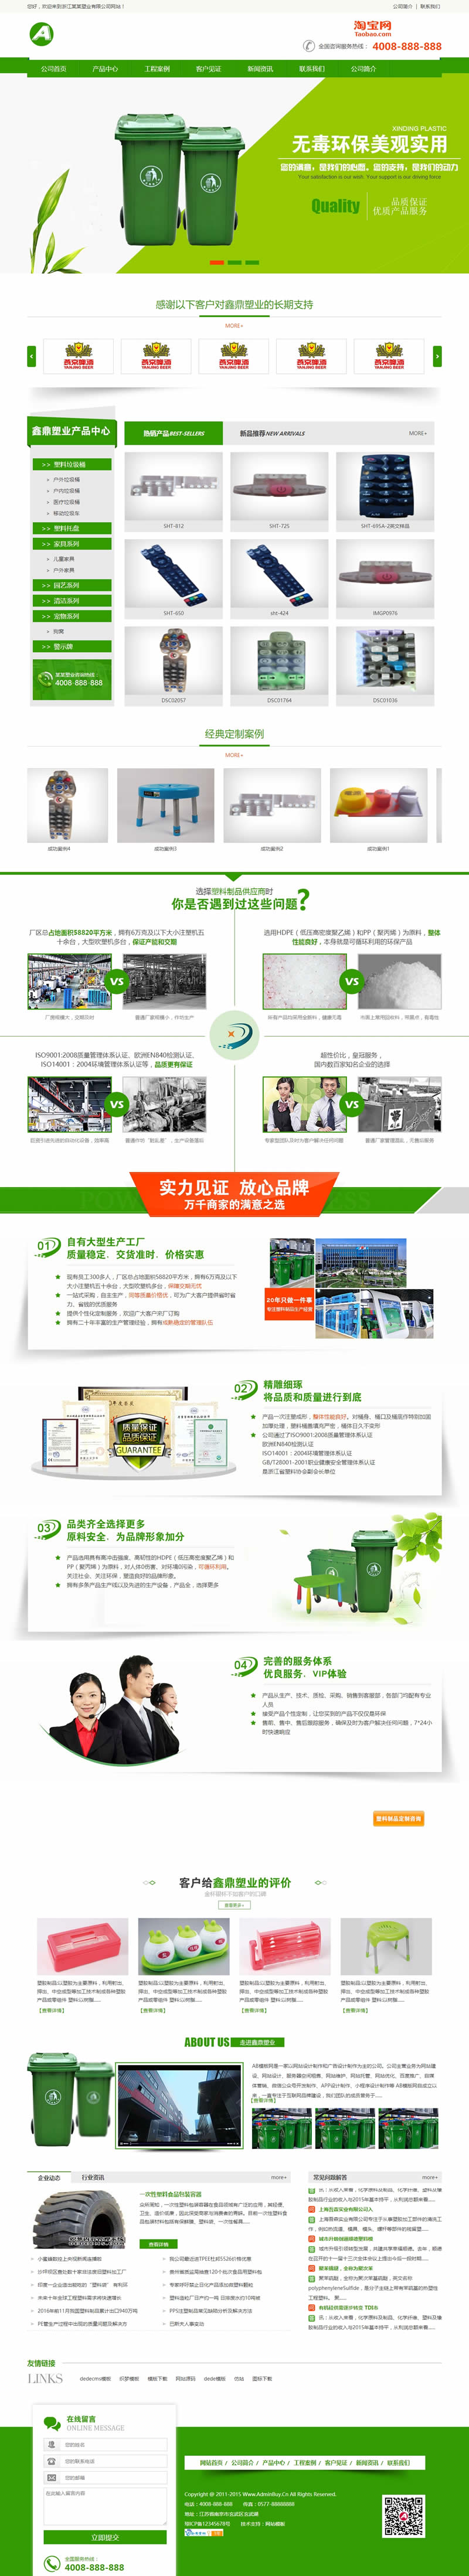 绿色营销型塑料制品类网站源码 环保塑料垃圾桶生产企业网站织梦模板